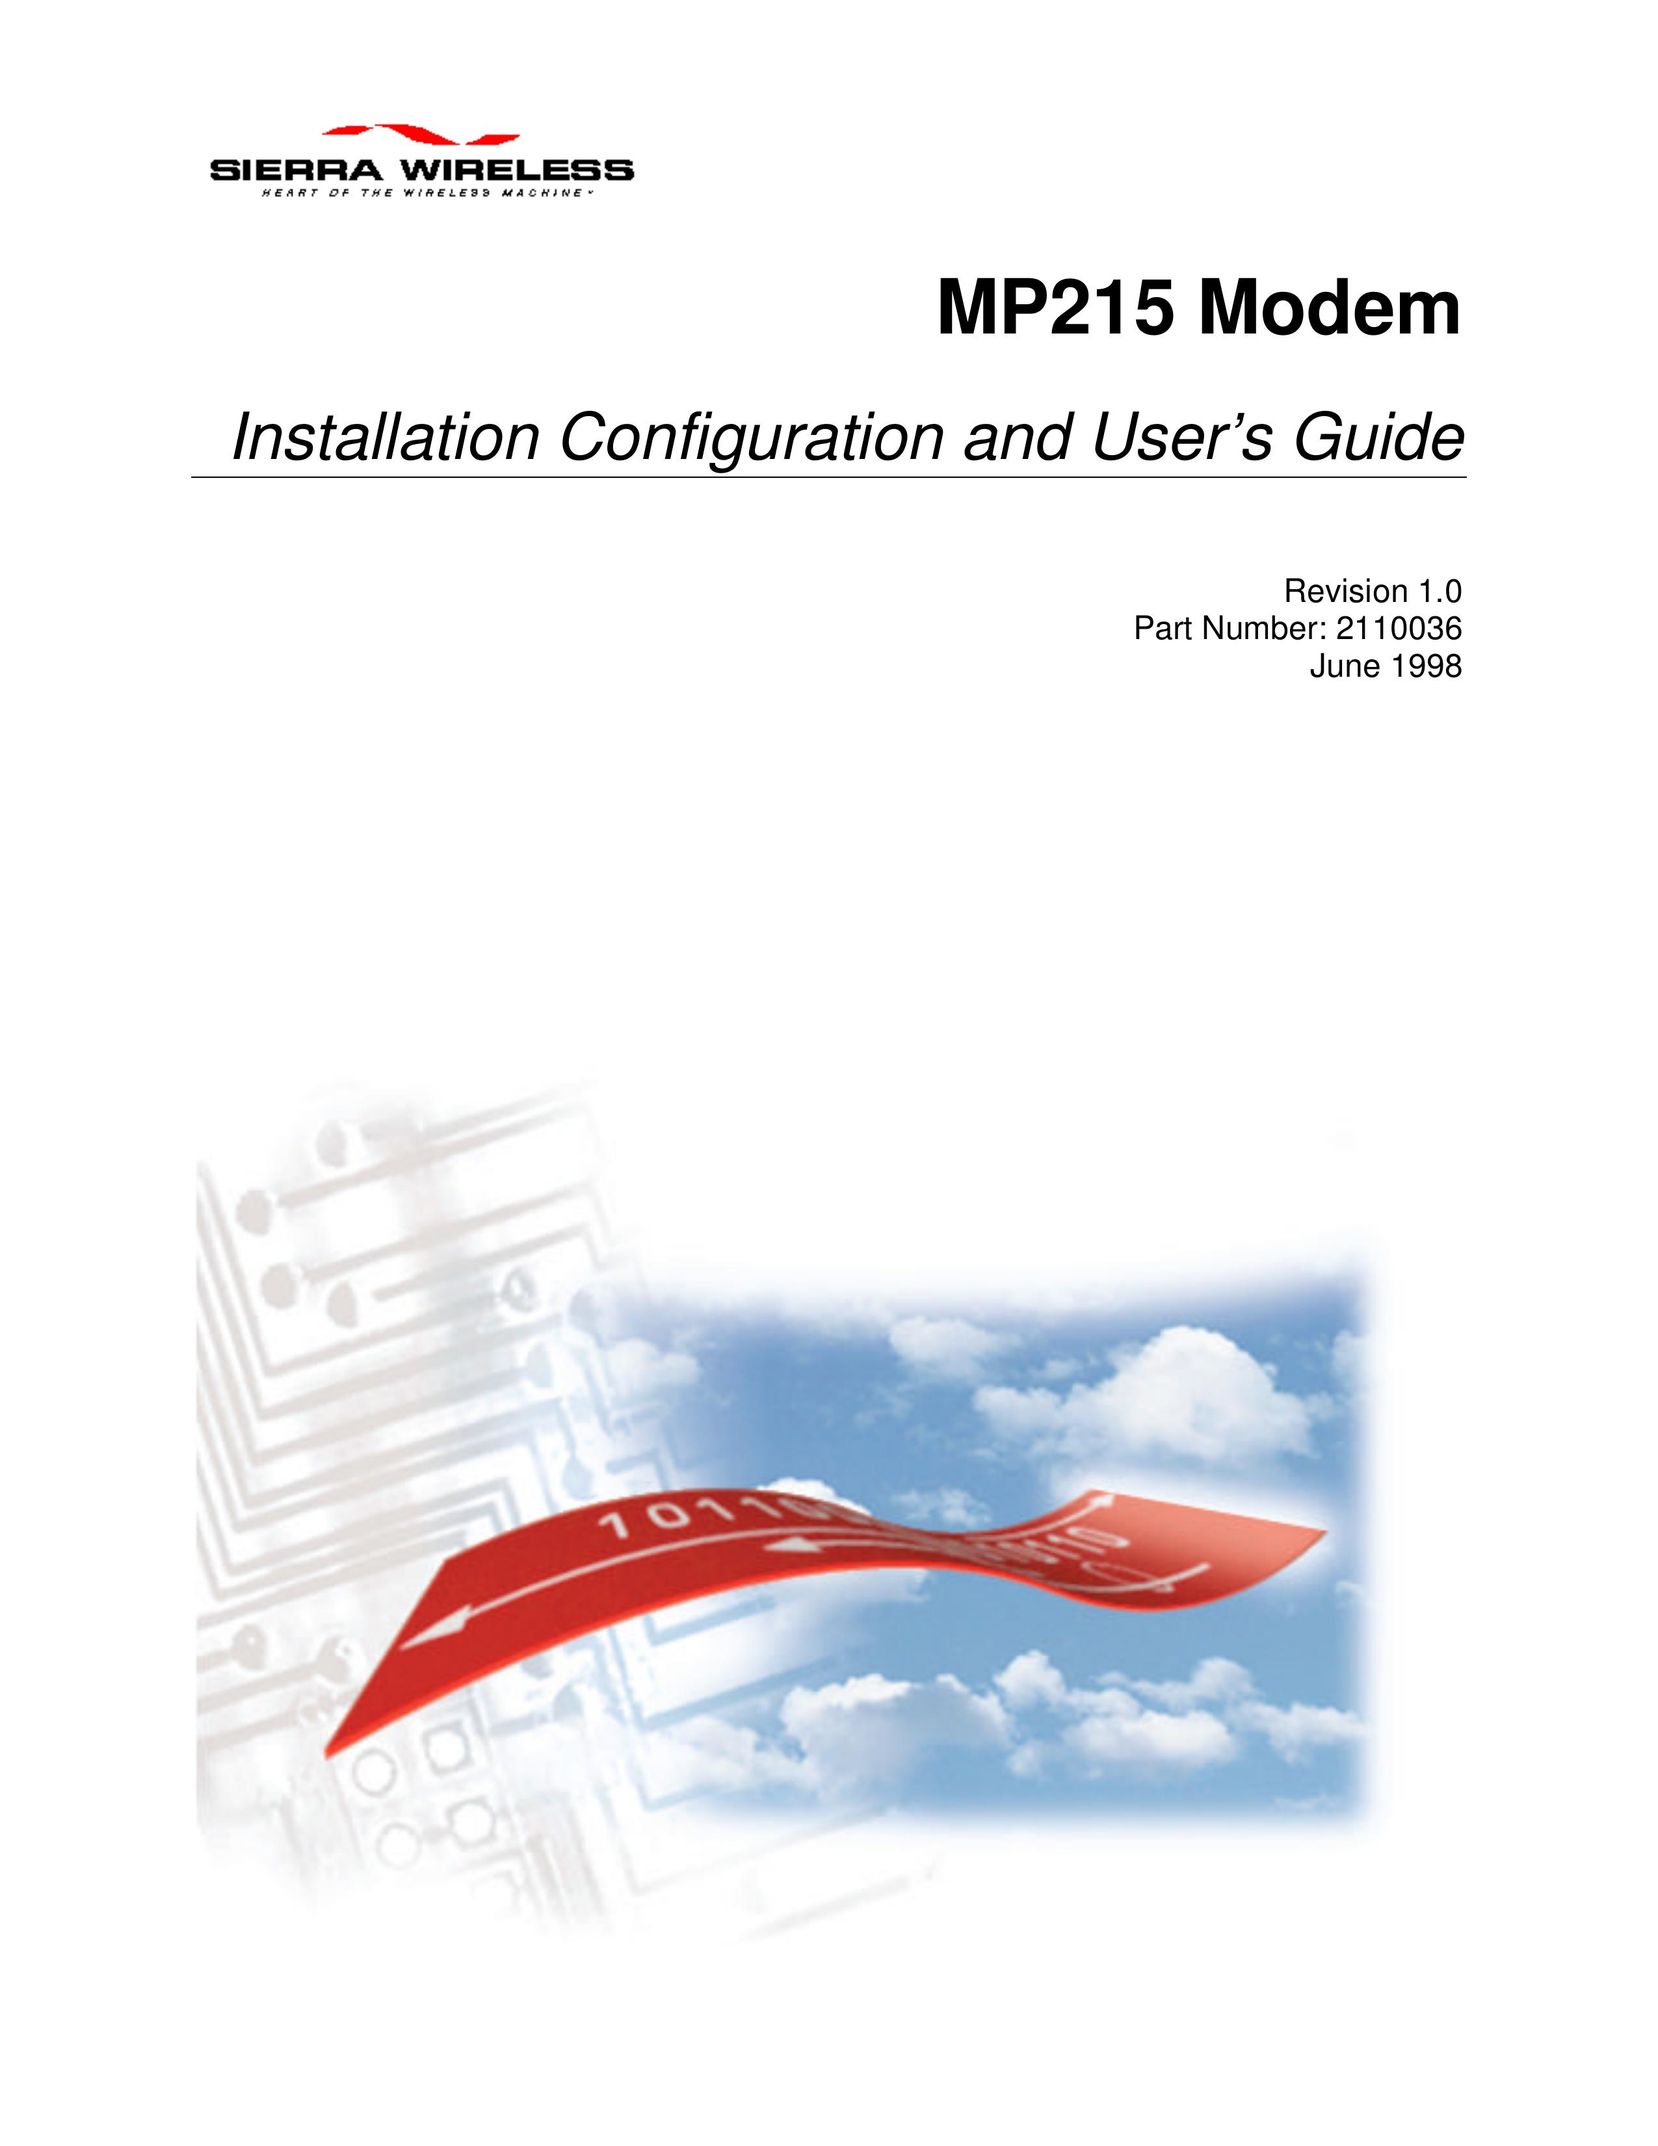 Sierra Wireless MP215 Network Card User Manual